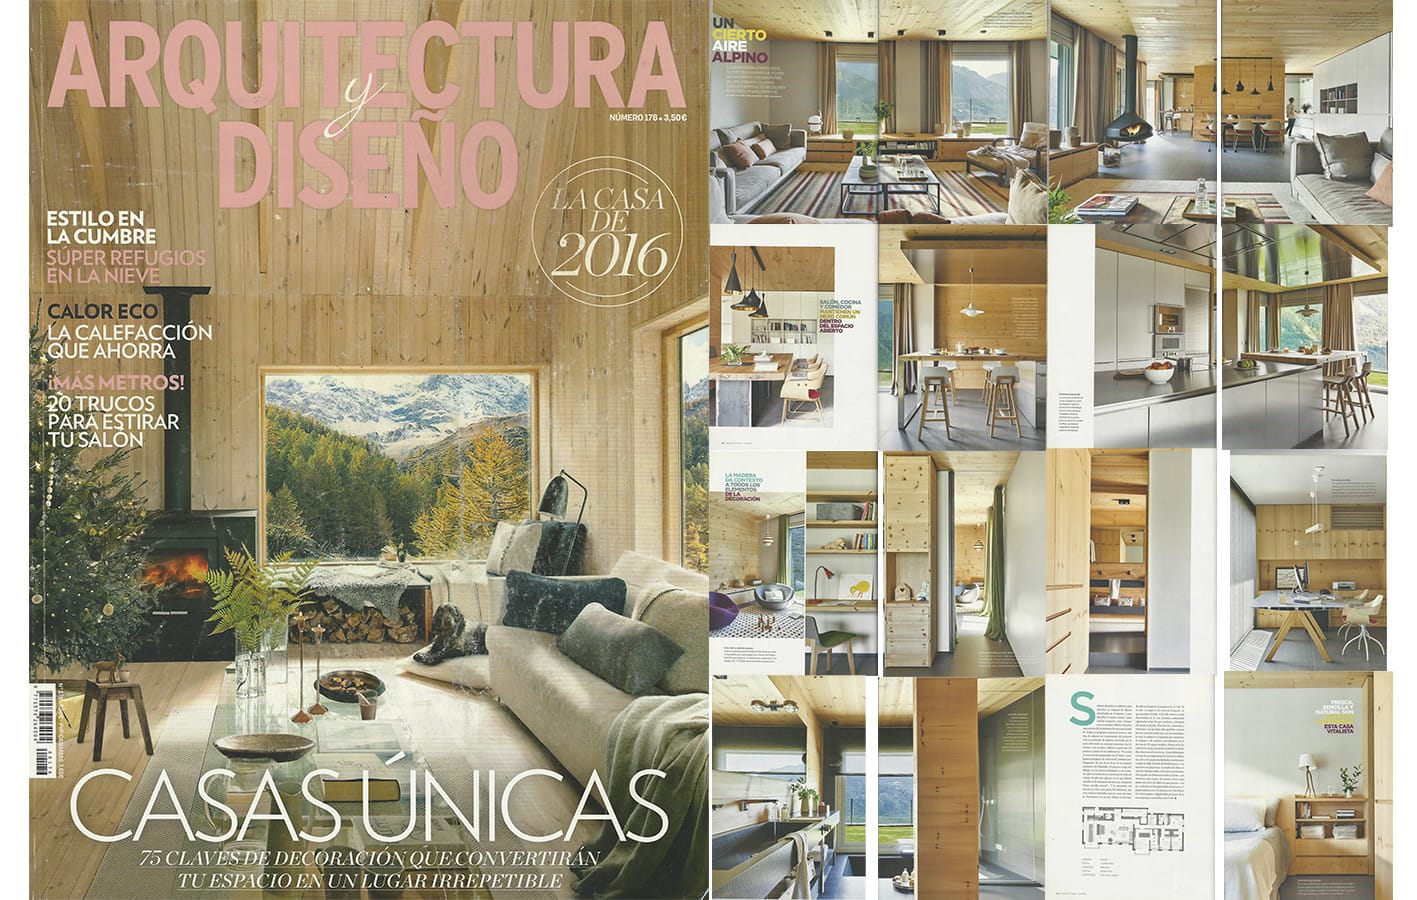 Arquitectura y Diseño publica un espectacular reportatge del nostre projecte a Andorra